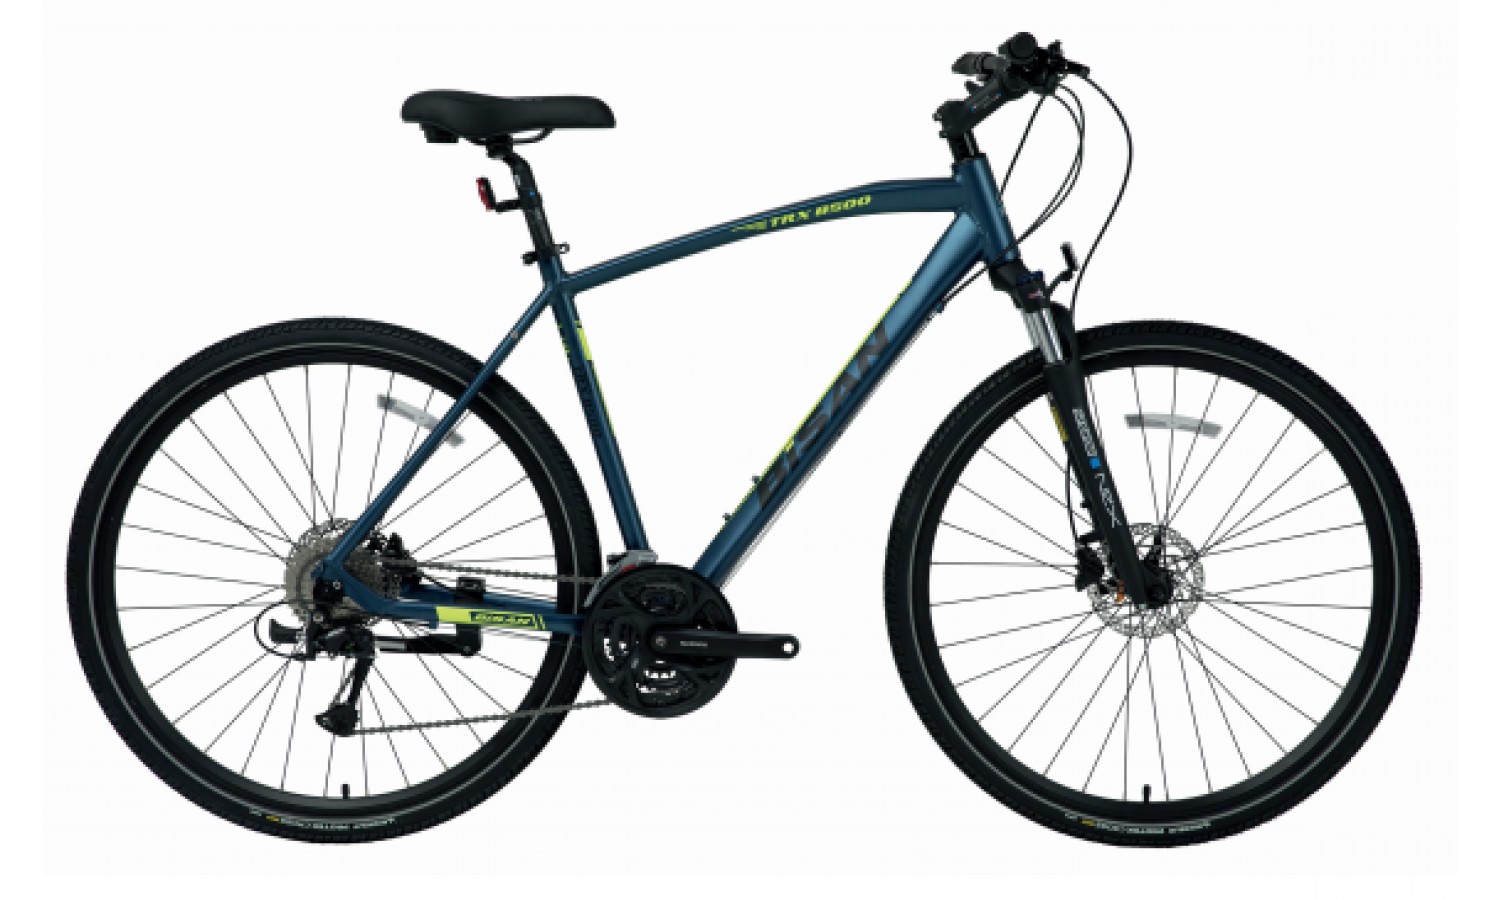 Bisan Trx 8500 28 Hd Trekking Bisiklet (Mavi Yeşil)